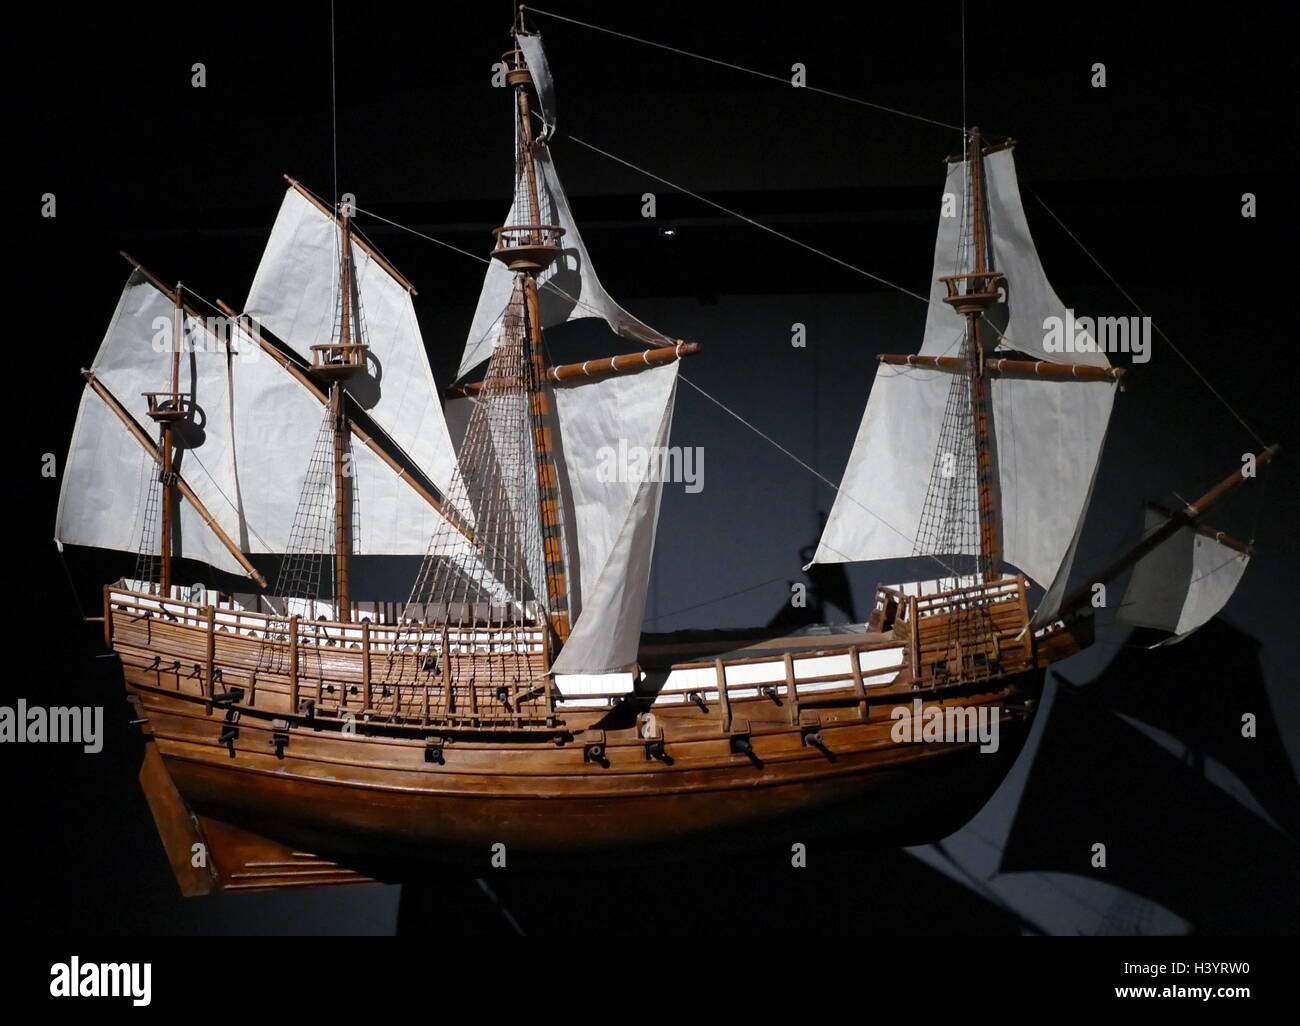 Die Mary Rose ist ein CARRACK - Typ Kriegsschiff der englischen Tudor navy von König Henry VIII. Nach 33 Jahren in mehreren Kriegen gegen Frankreich, Schottland und der Bretagne und nach stark im Jahr 1536 wieder aufgebaut, sah sie ihr letzte Aktion am 19. Juli 1545 Stockfoto